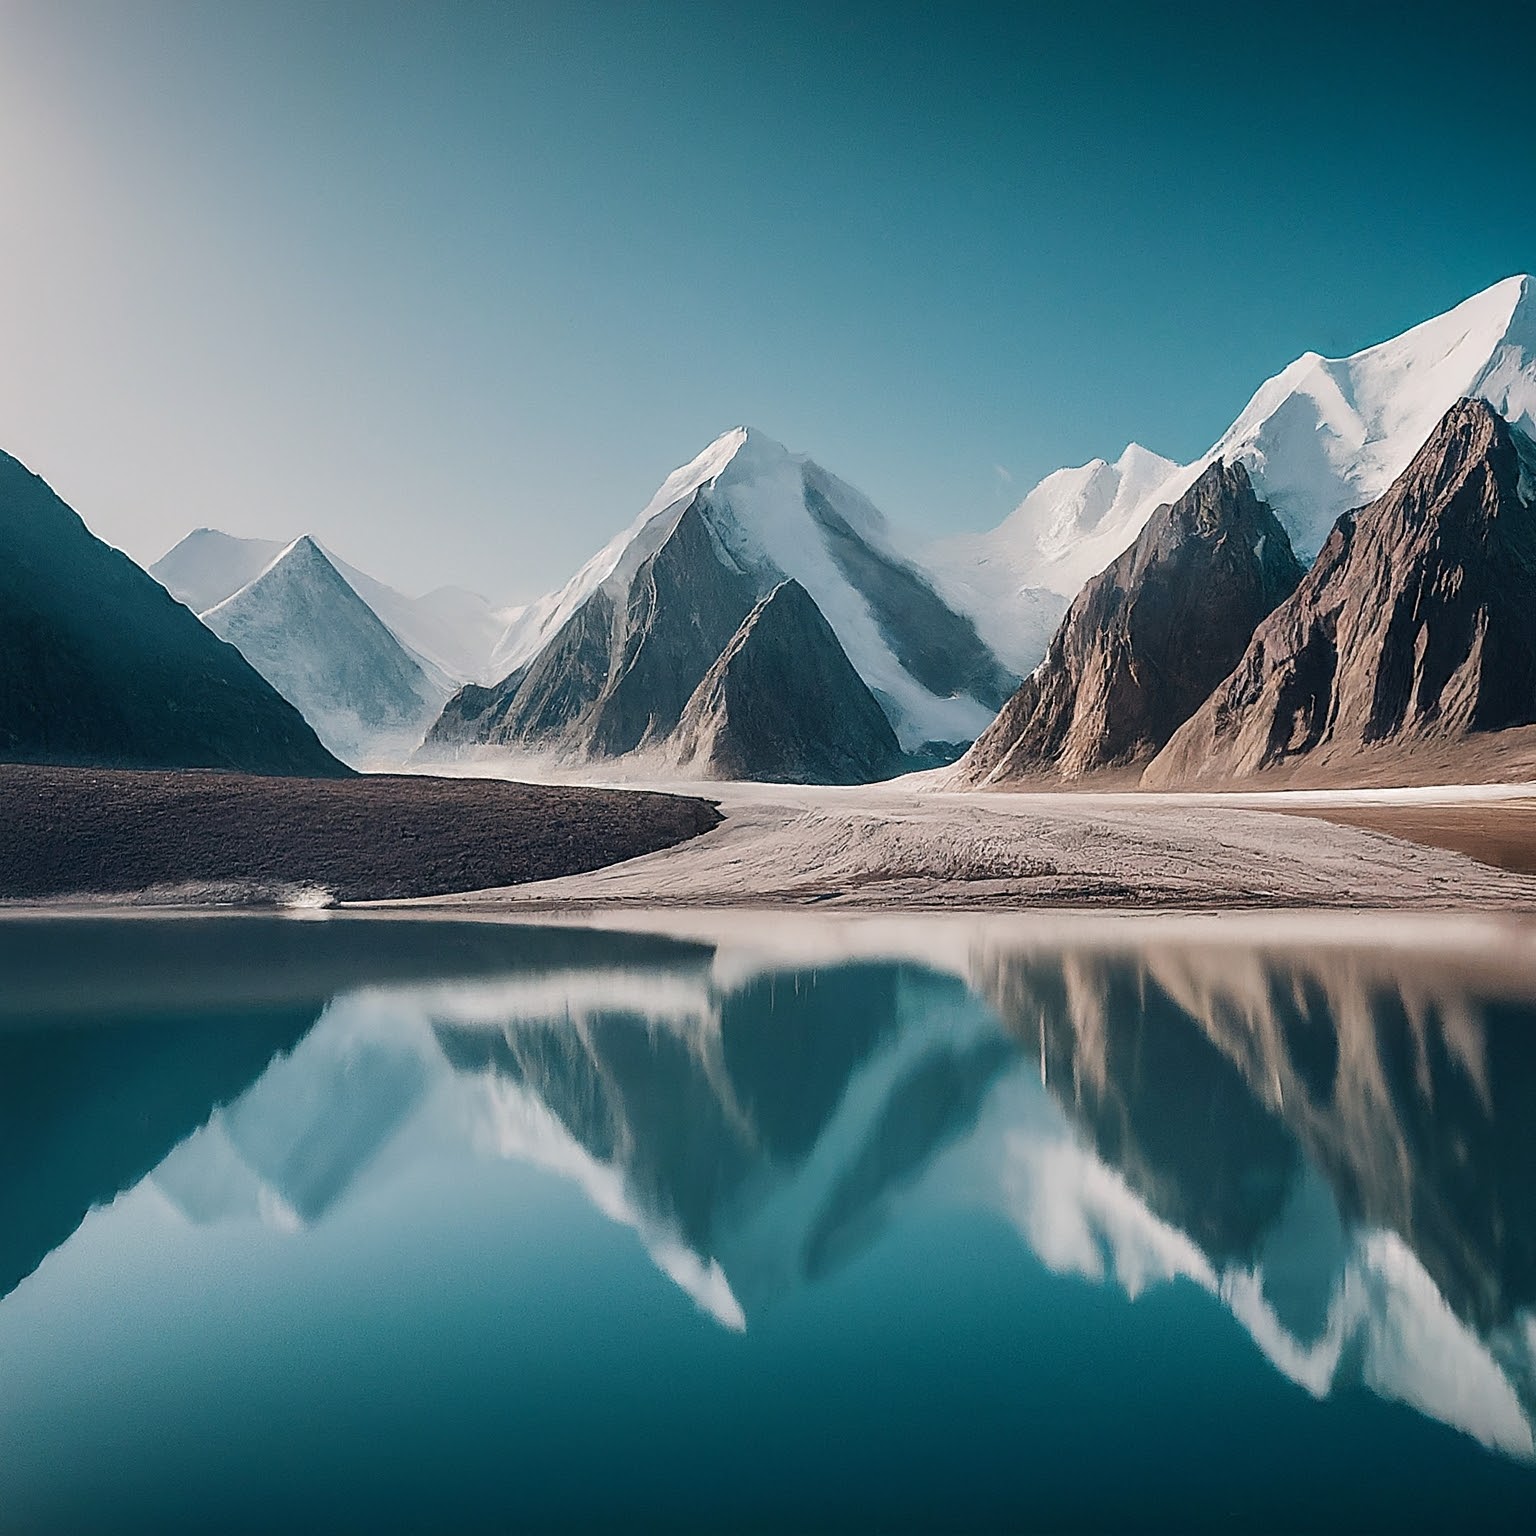 Engilchek Glacier, Kyrgyzstan